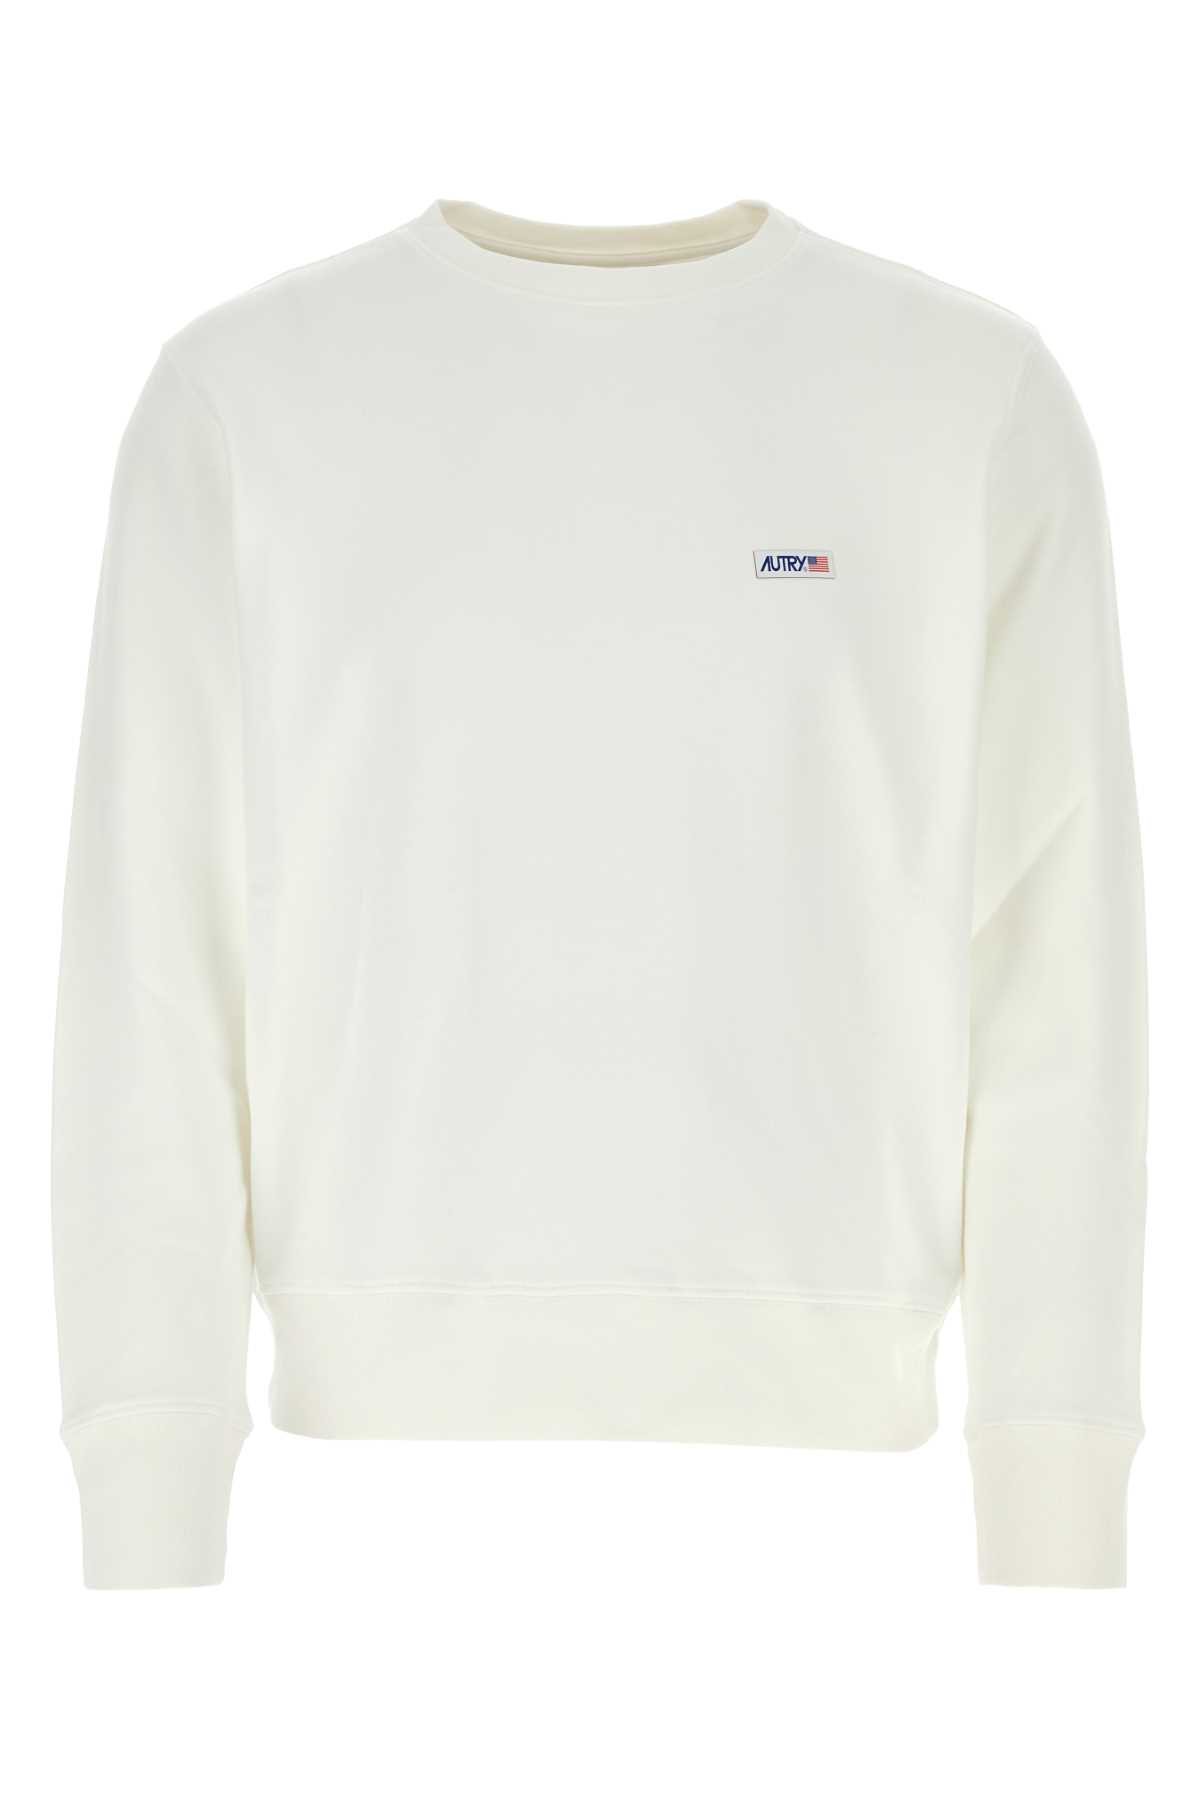 Shop Autry White Cotton Sweatshirt In 507w